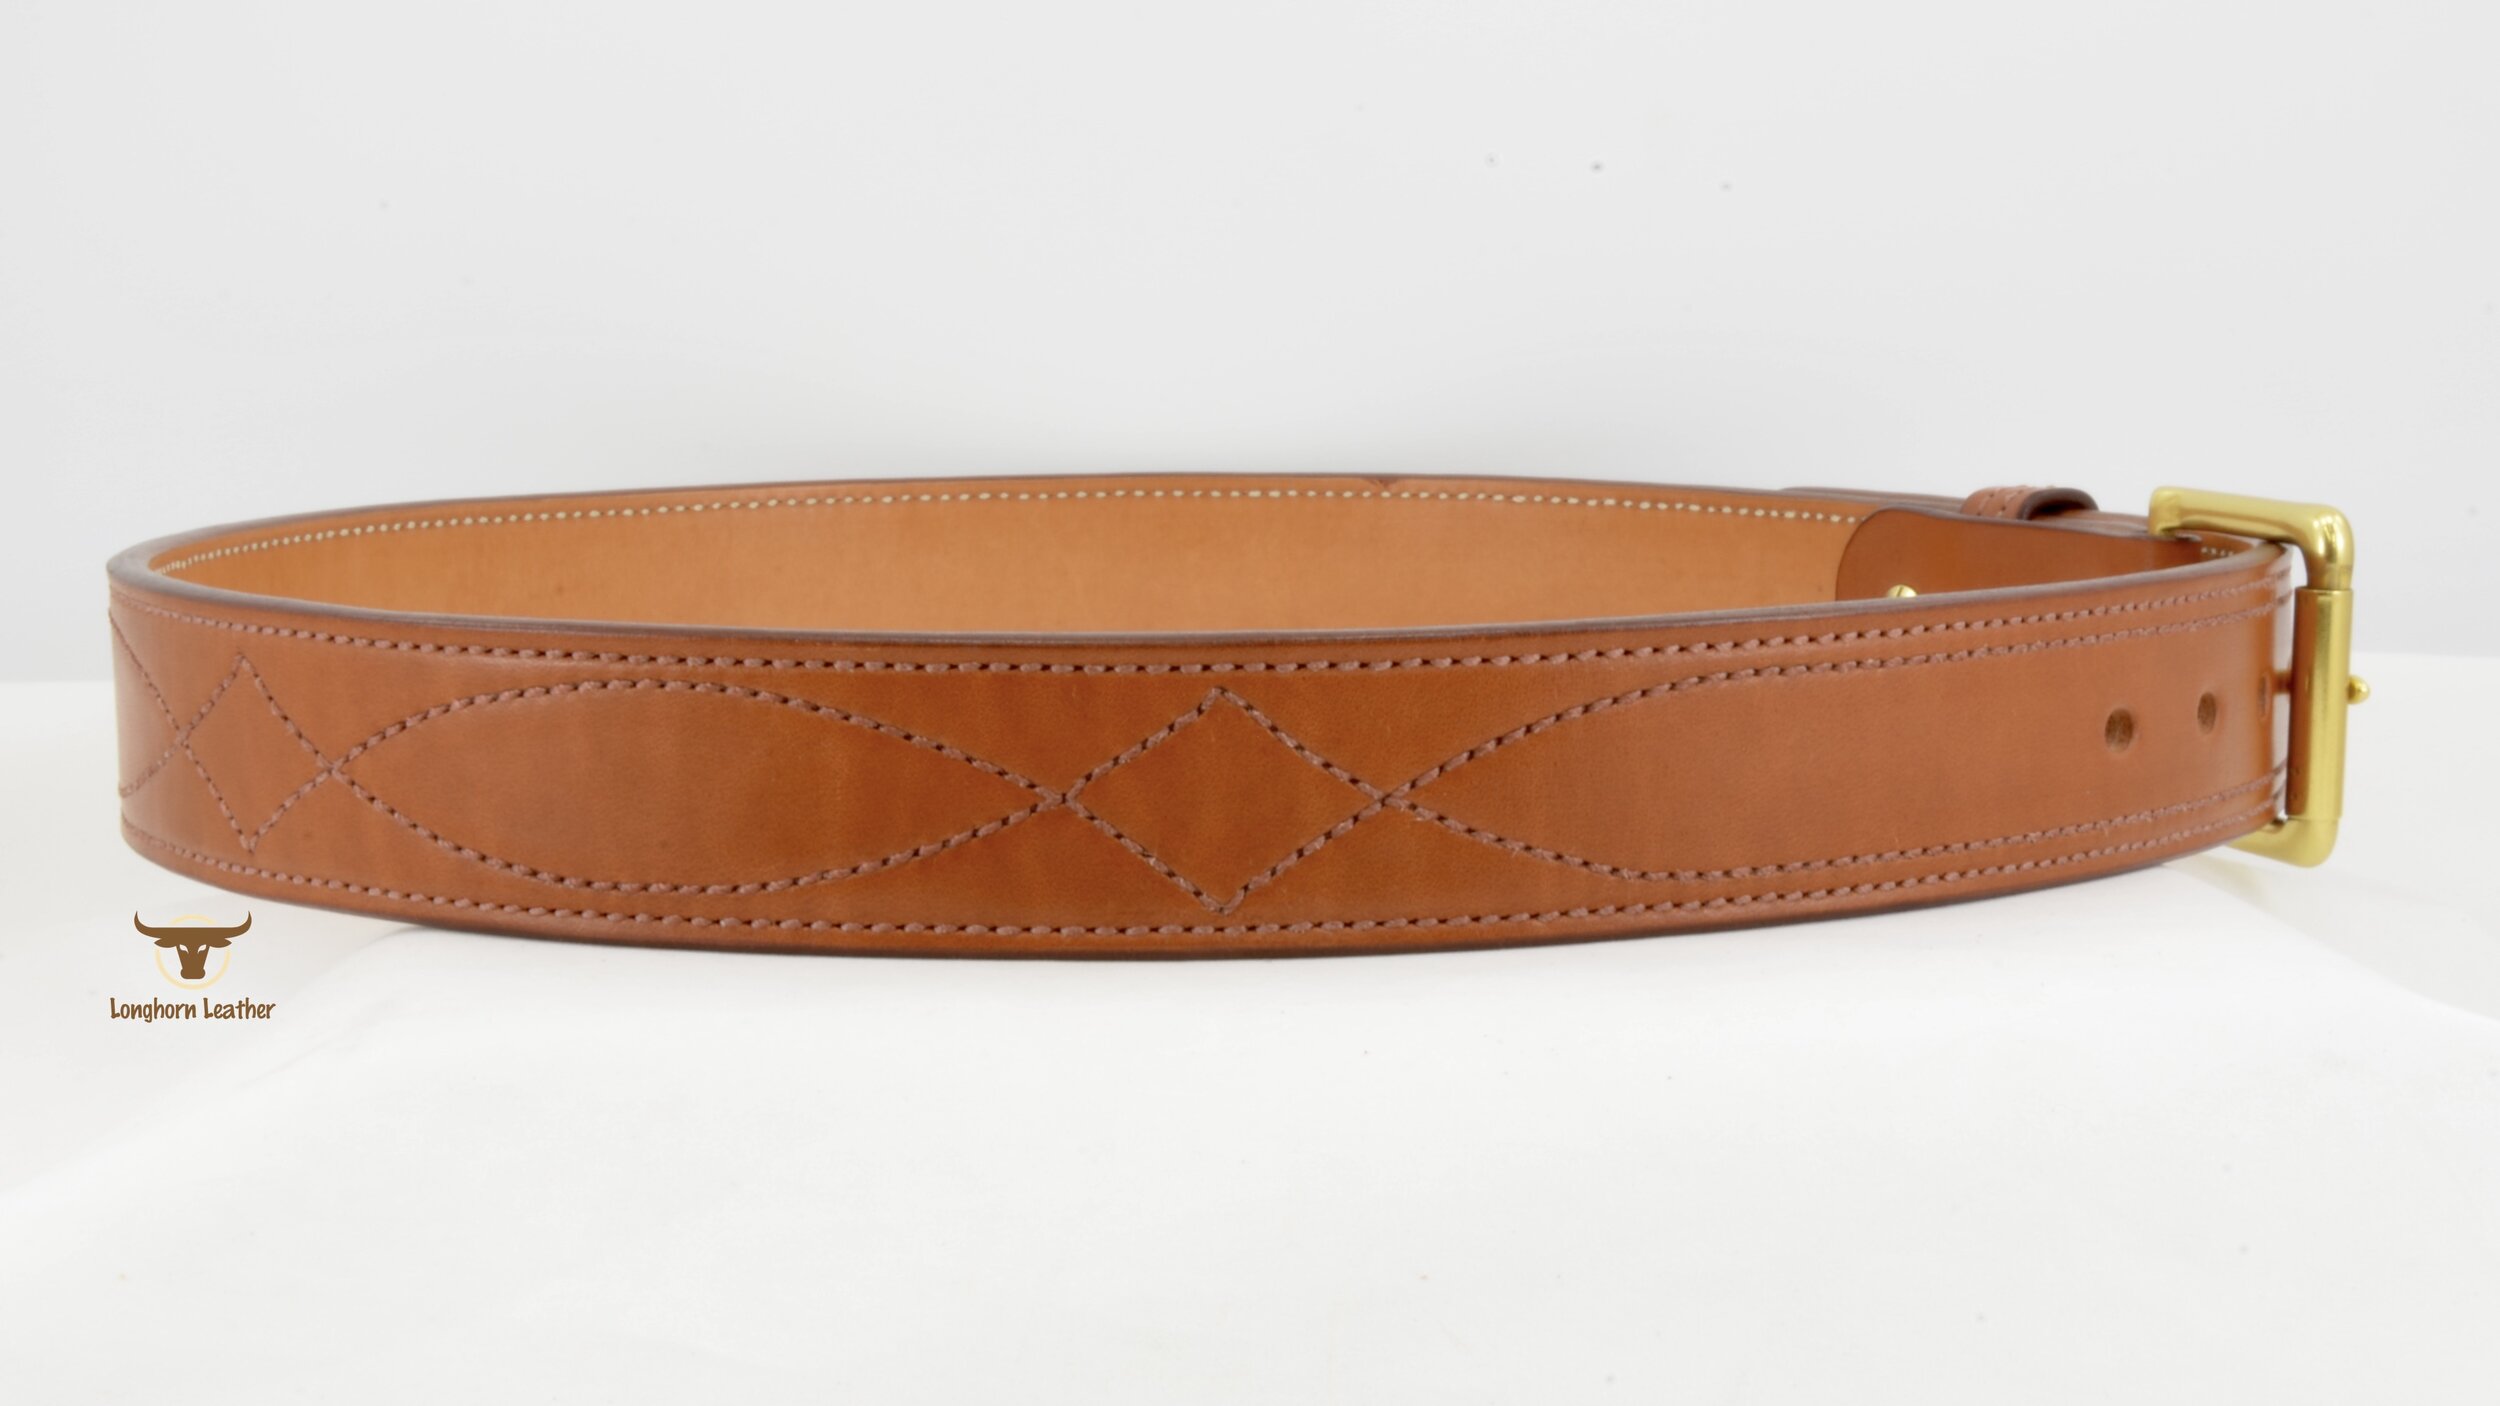 Gun Belt Buckle  Western Leather Belts – Obscure Belts